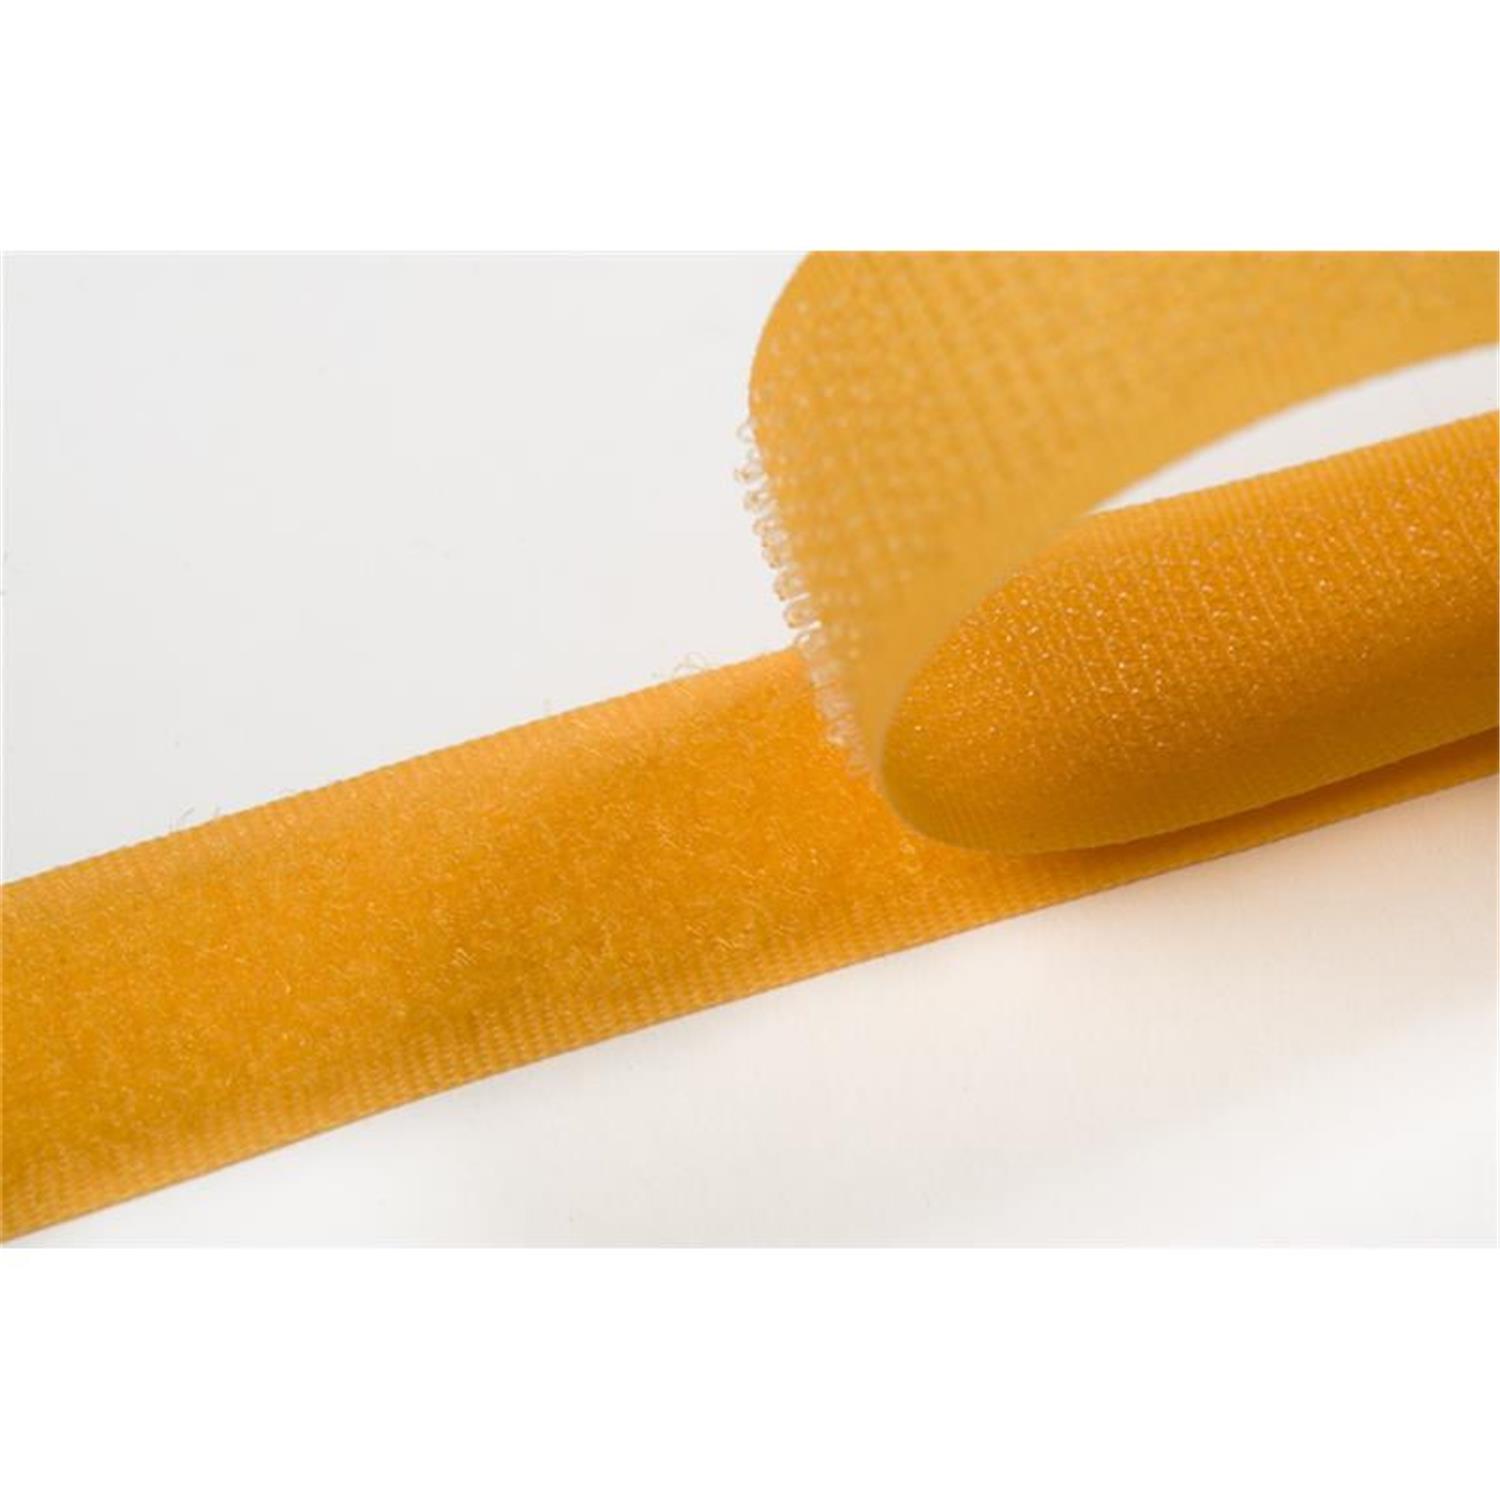 Klettband zum aufnähen, 100 mm, gelb #05 1 Meter